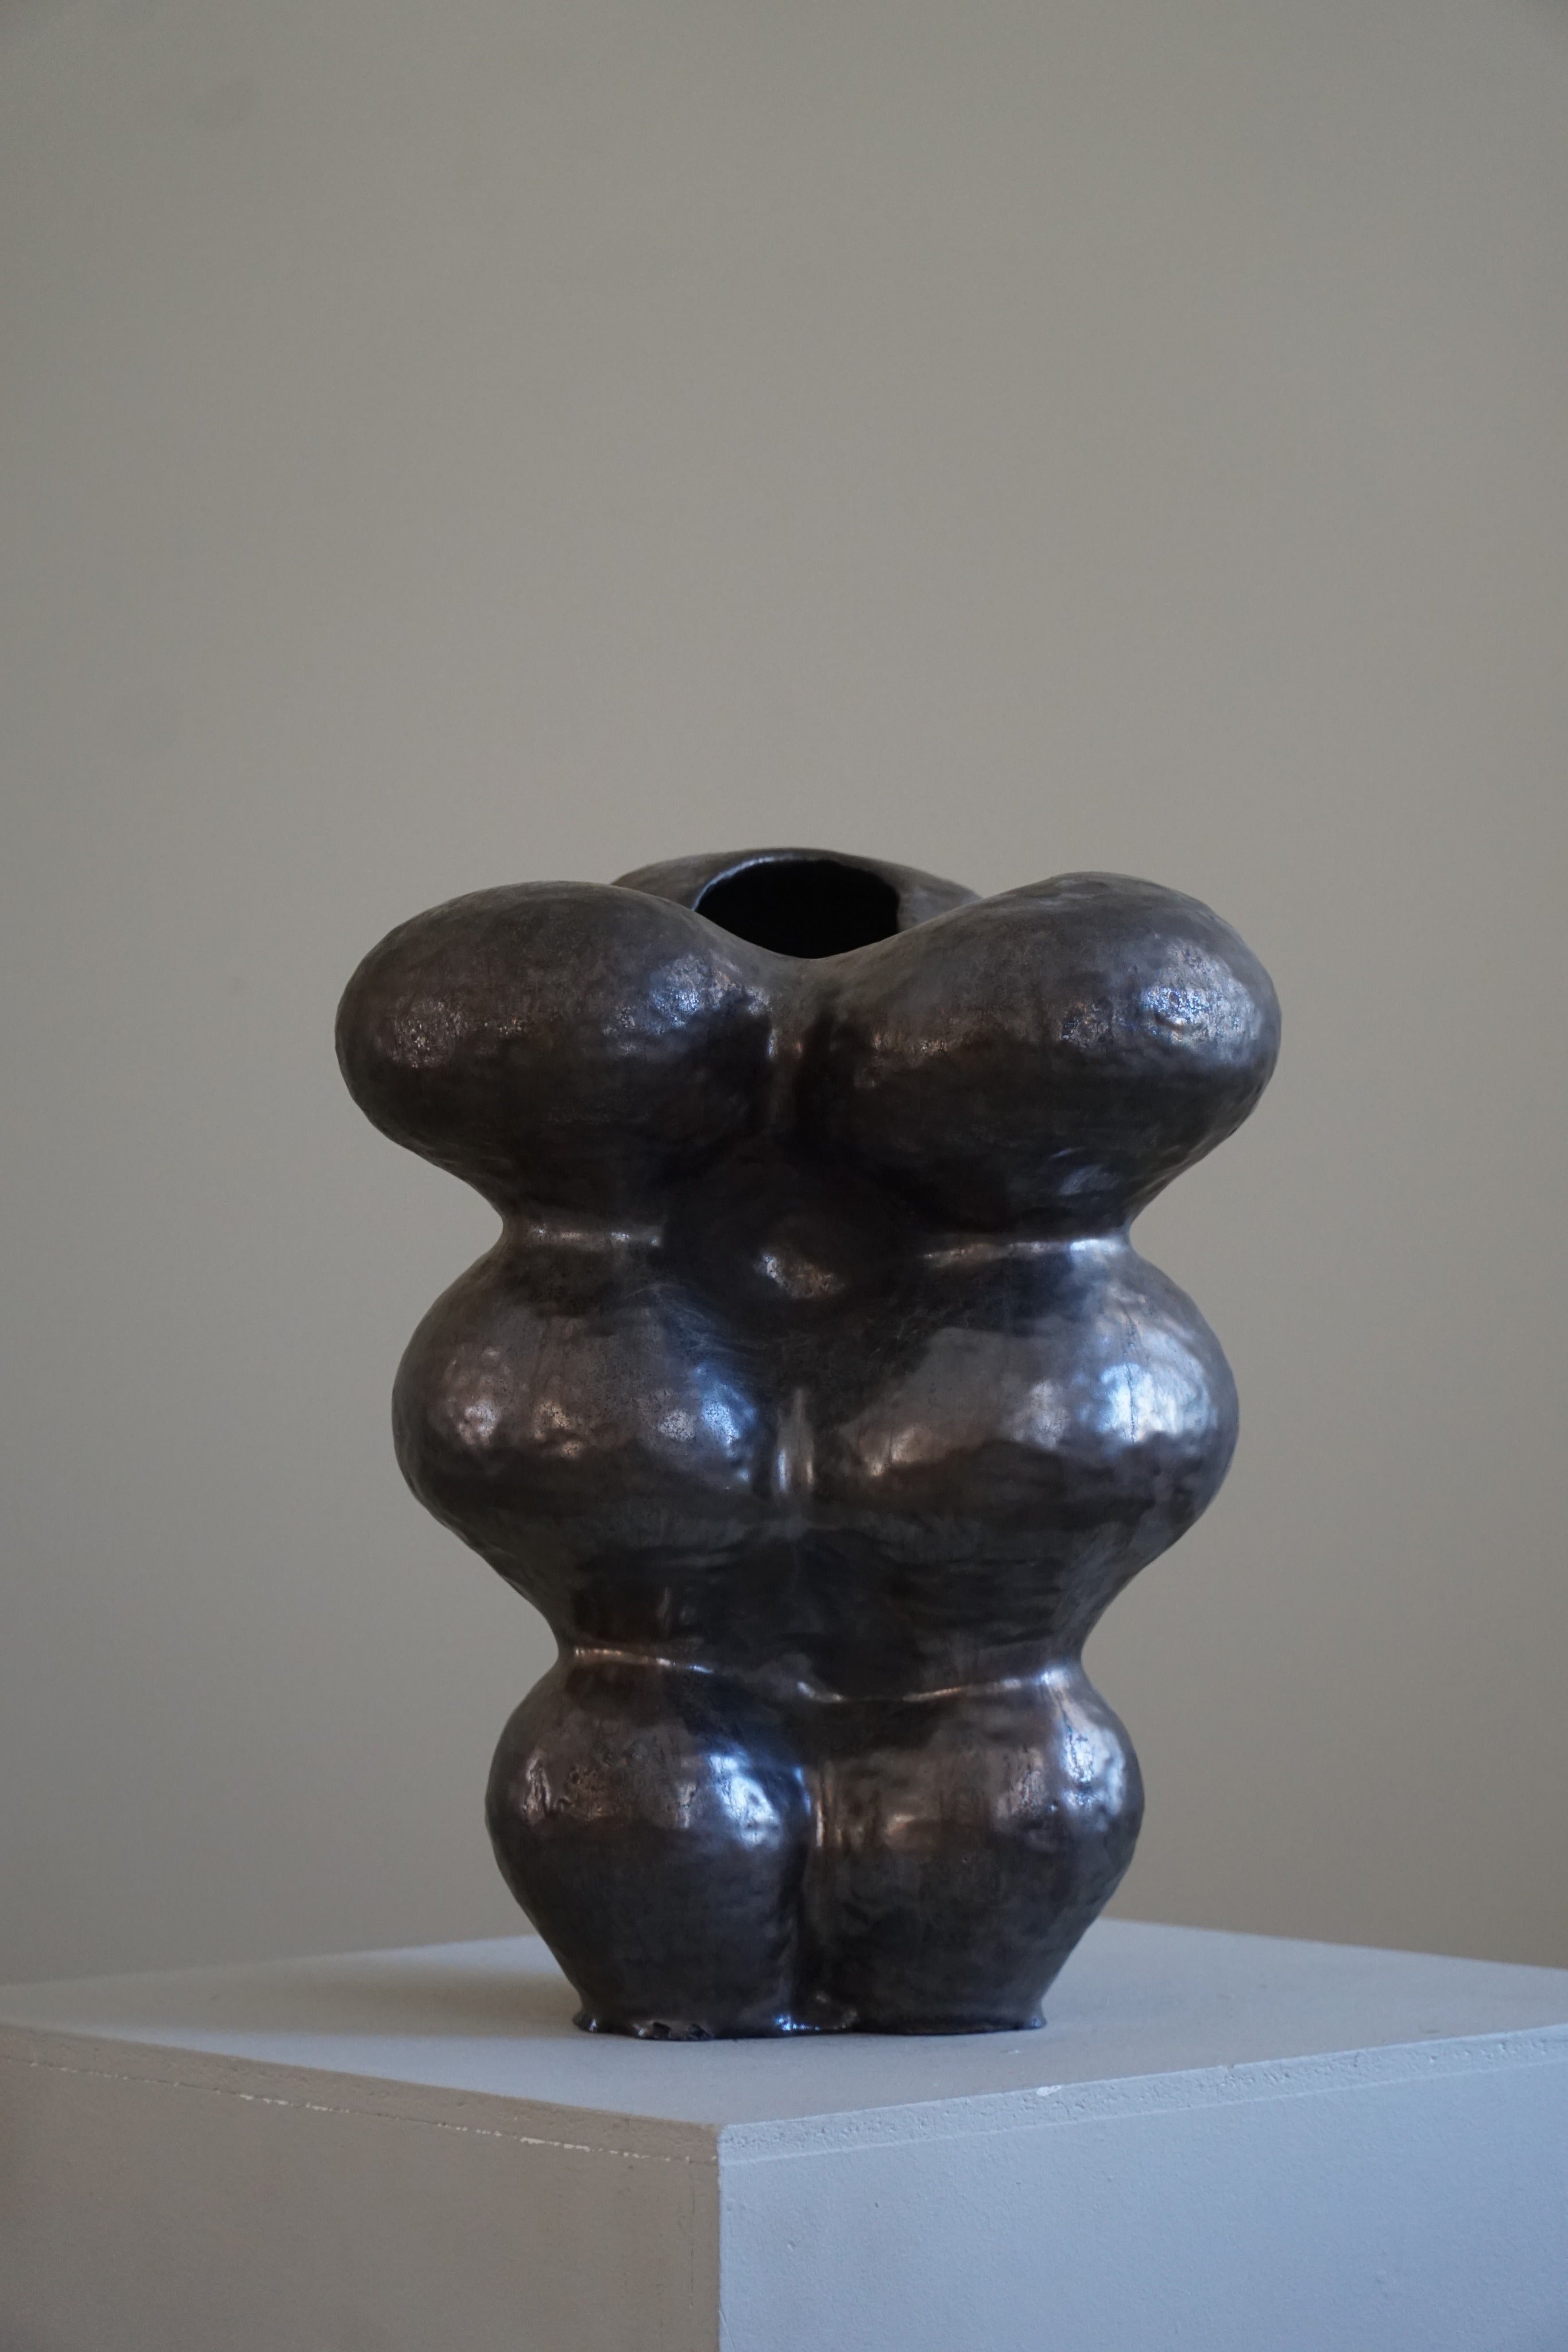 Grand vase en céramique avec une glaçure bronze foncé, réalisé par l'artiste danois Ole Victor, 2021.

Ole Victor est un artiste danois qui a fréquenté l'Art Academy entre 1975 et 1980. Depuis, il crée des œuvres d'art et des céramiques. Il a été